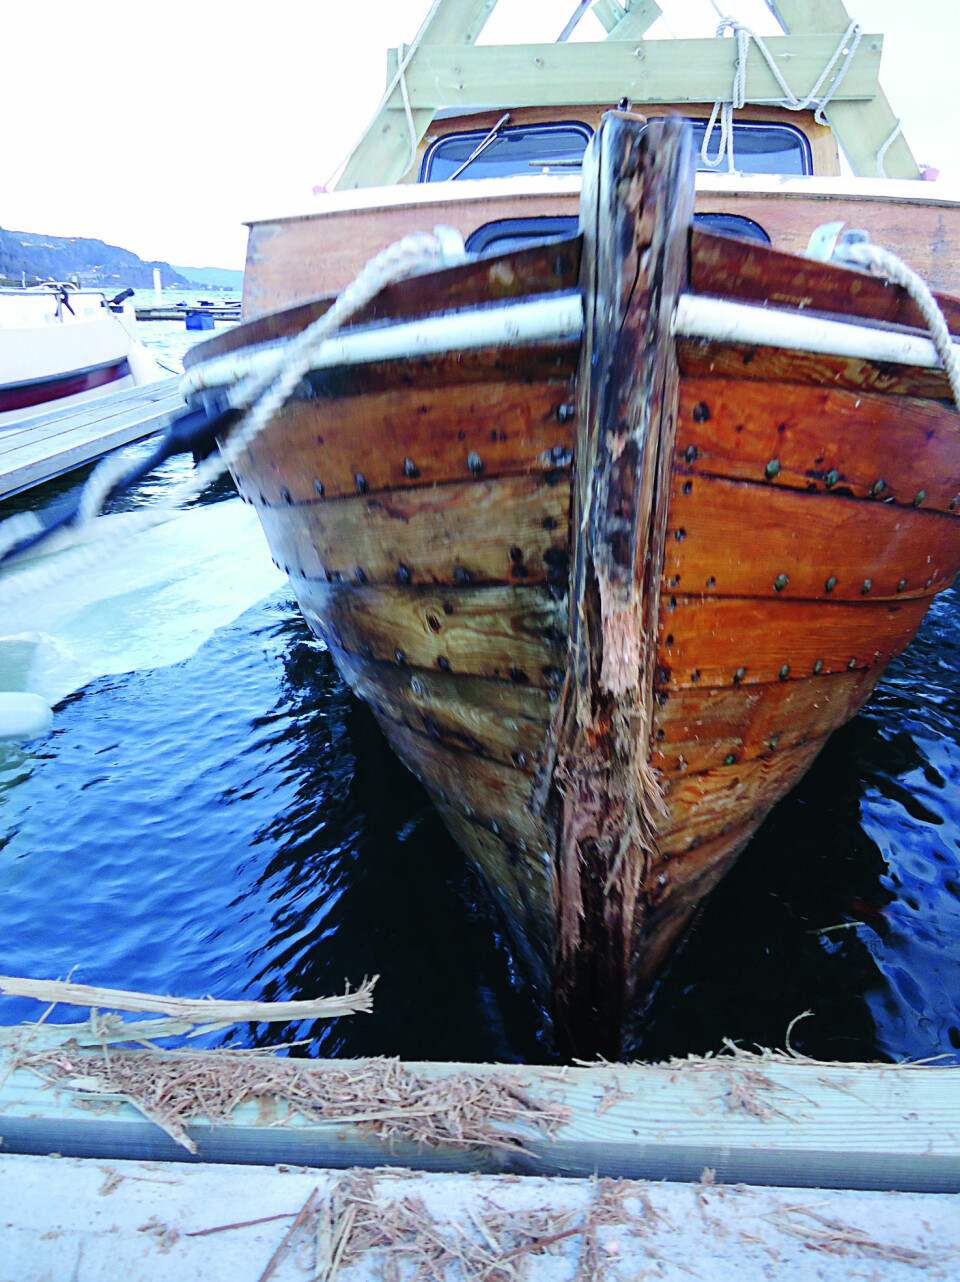 GNAGER SEG INN: Denne båten har spist seg inn i brygga. Foto: Danielle Rolim de Gois Finsrud.